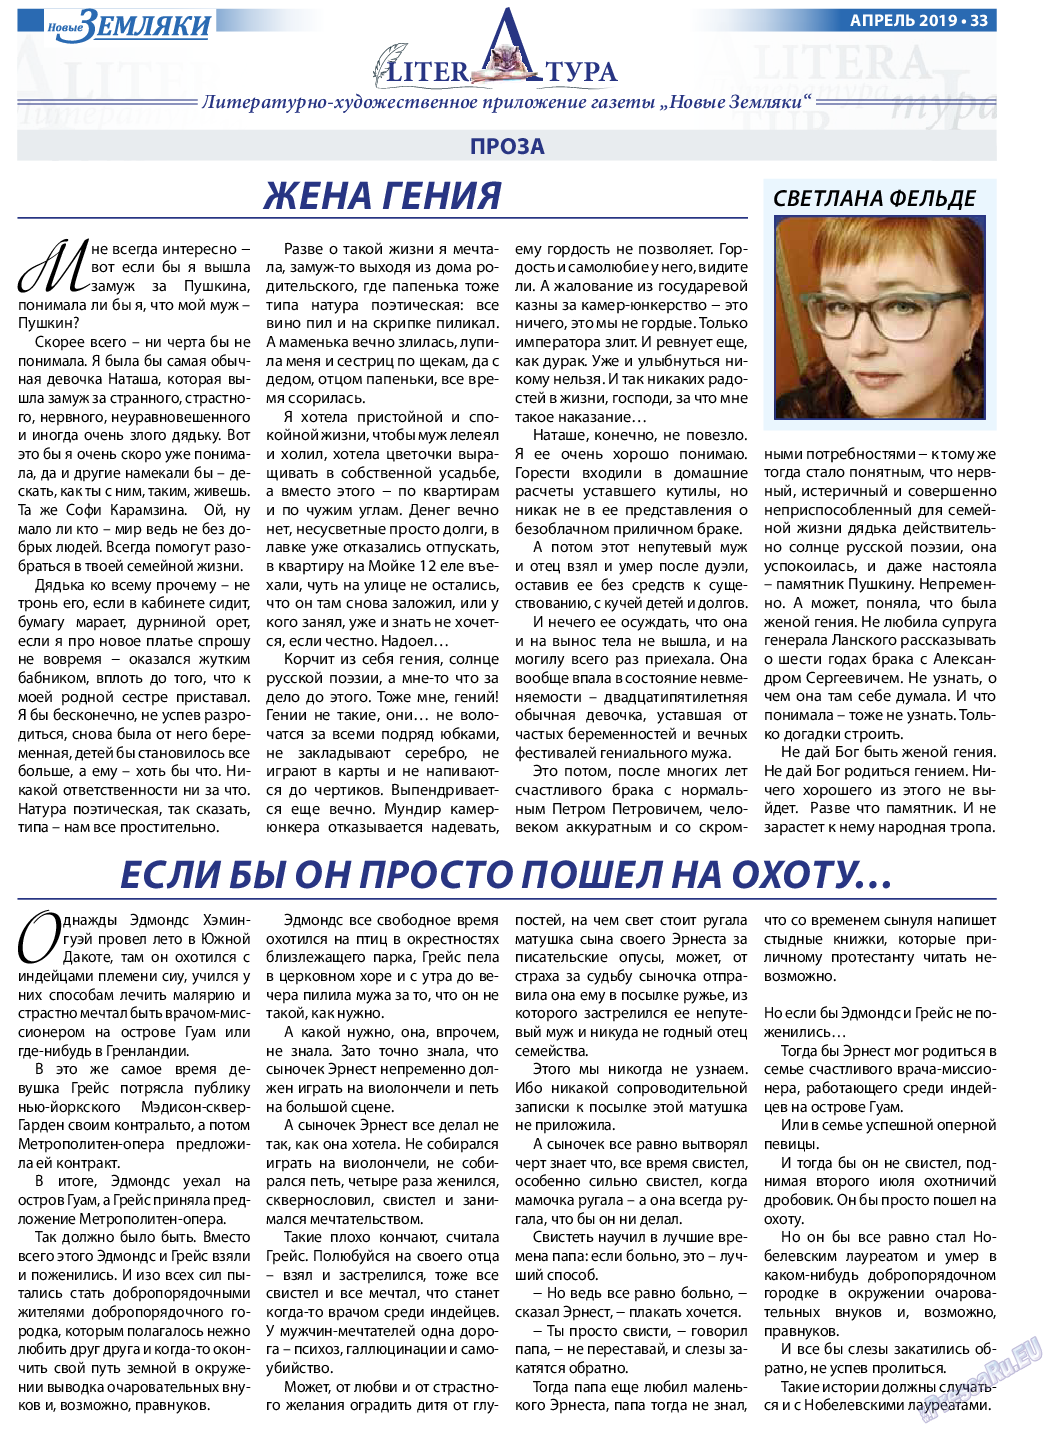 Новые Земляки, газета. 2019 №4 стр.33